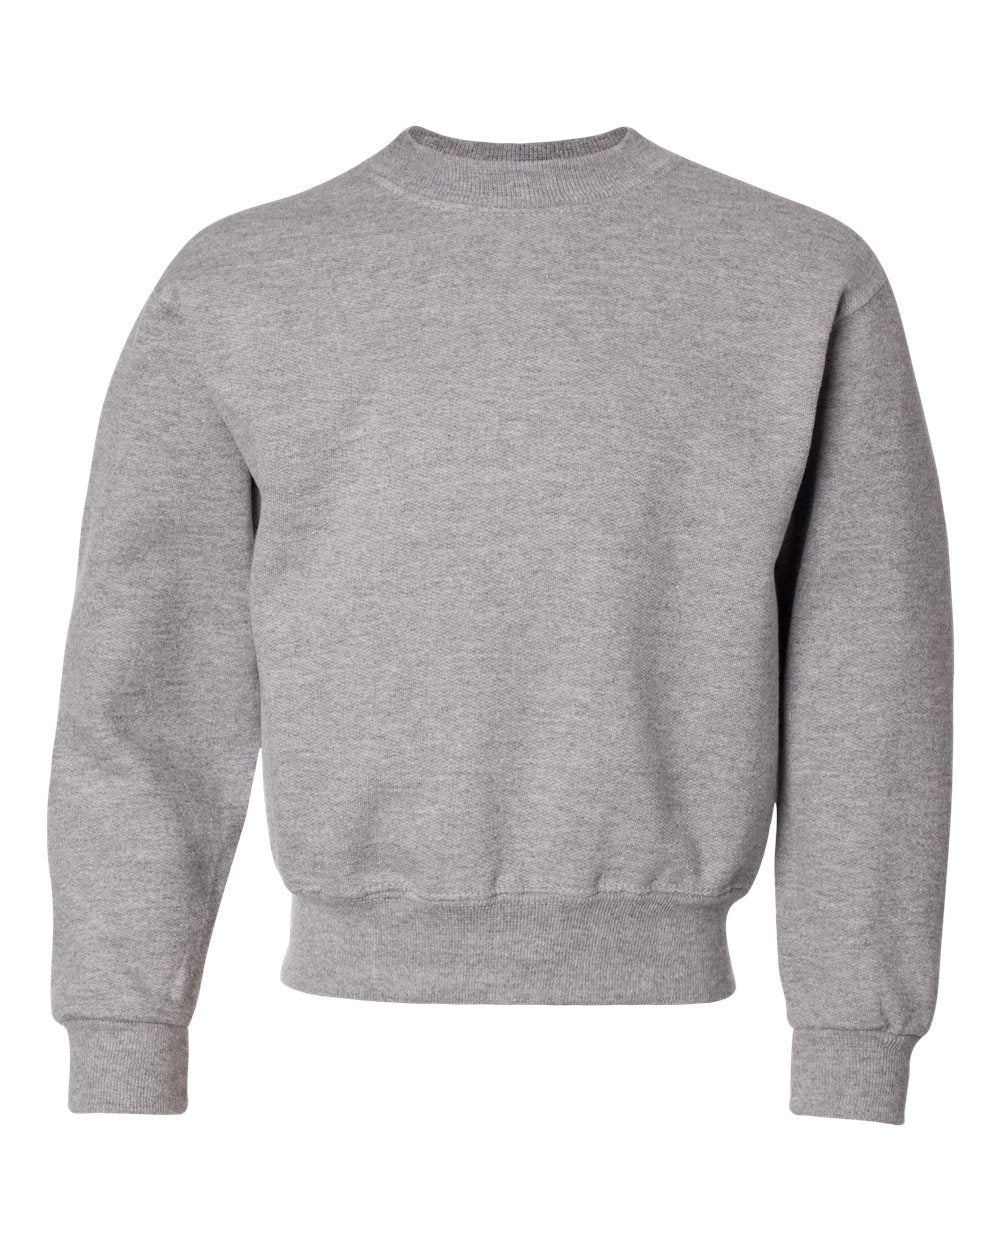 Youth Jerzees NuBlend Crewneck Sweatshirt Sizes Small - XLarge